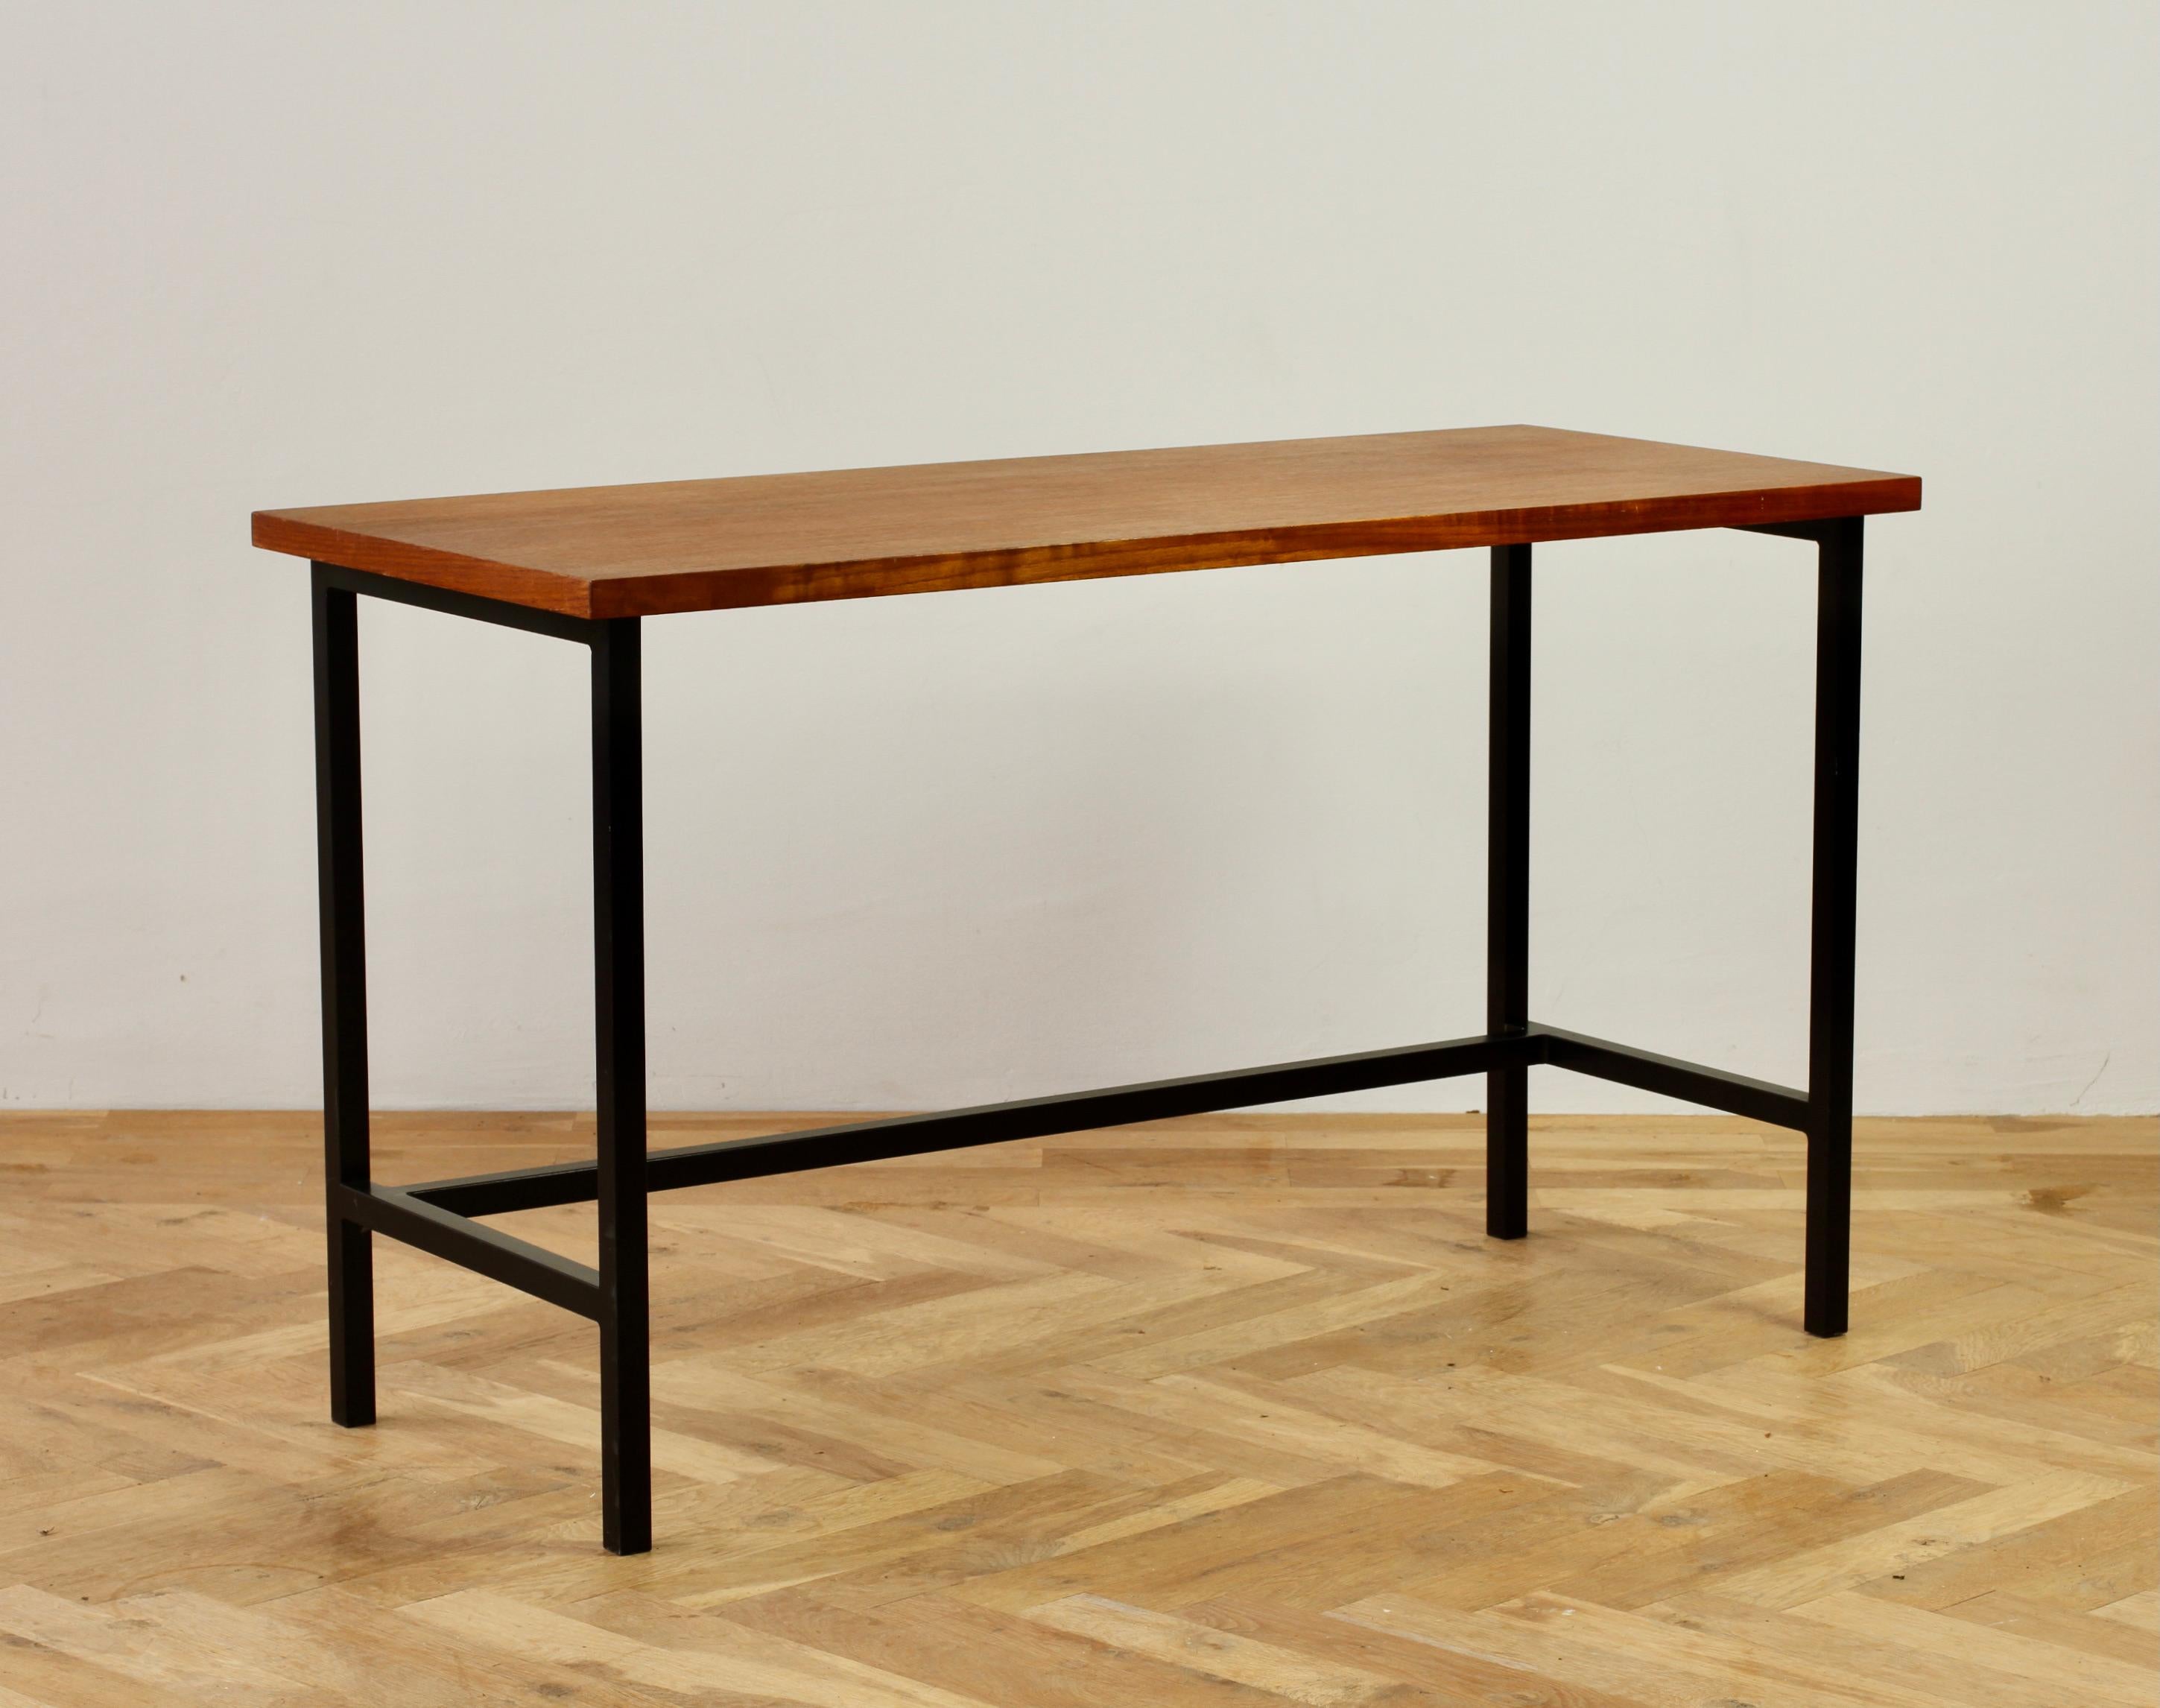 Ein wunderbarer modernistischer amerikanischer Mid-Century-Schreibtisch von Florence Knoll, ca. 1950er Jahre. Hergestellt aus einem schwarz lackierten, quadratischen Eisenrohrrahmen mit furniertem Holz (wir vermuten Teakholz). Dieser reizvolle Tisch